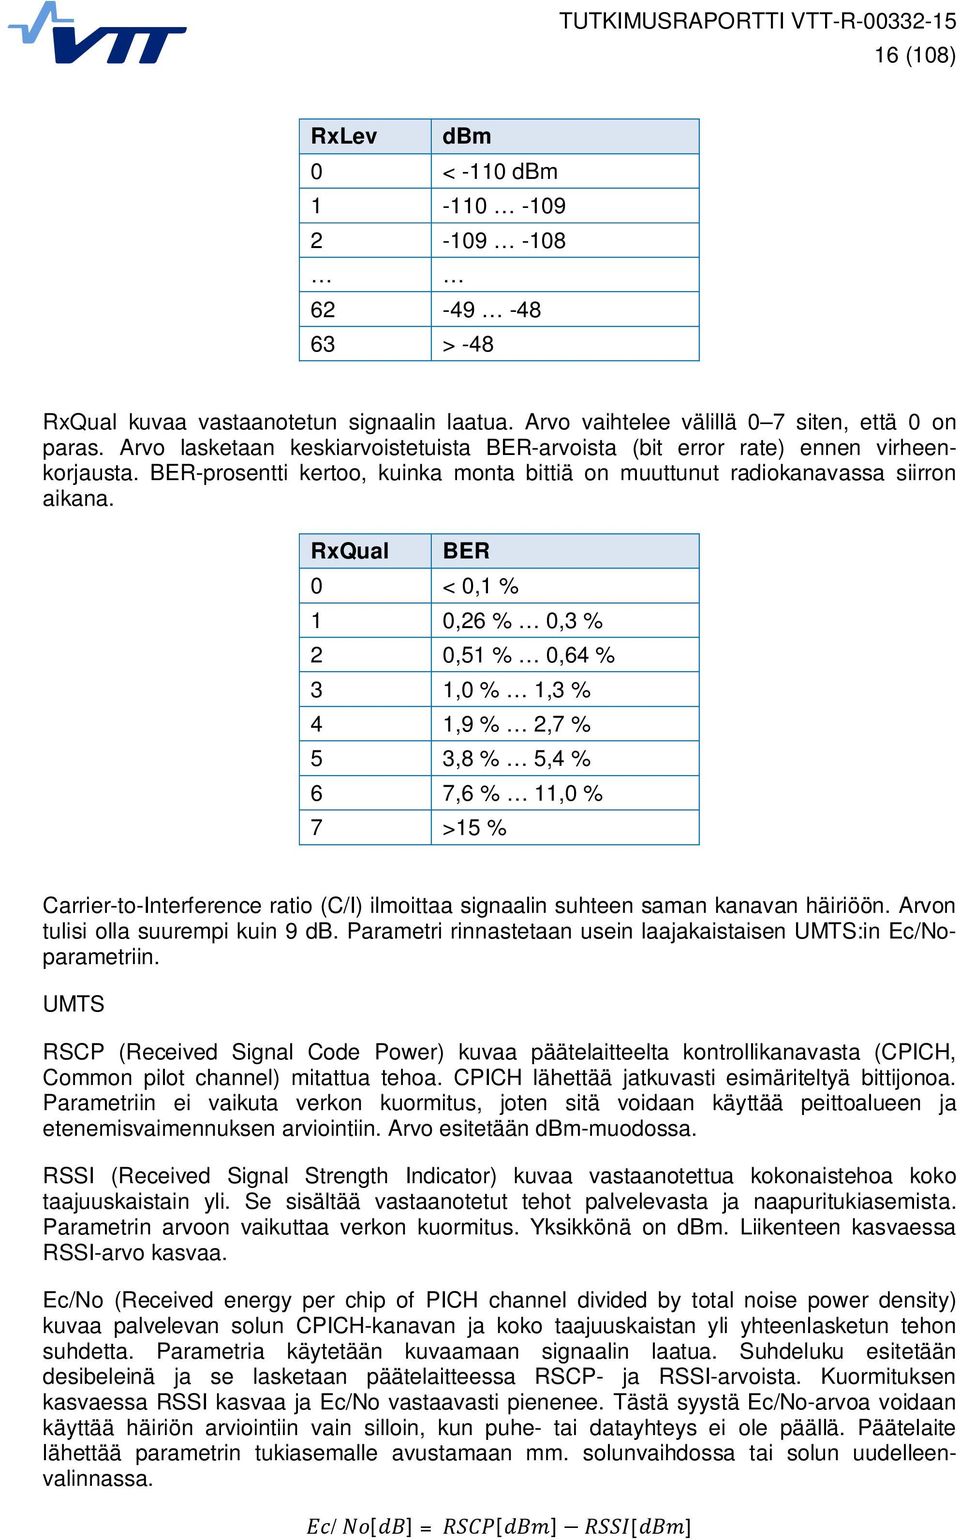 RxQual BER 0 < 0,1 % 1 0,26 % 0,3 % 2 0,51 % 0,64 % 3 1,0 % 1,3 % 4 1,9 % 2,7 % 5 3,8 % 5,4 % 6 7,6 % 11,0 % 7 >15 % Carrier-to-Interference ratio (C/I) ilmoittaa signaalin suhteen saman kanavan